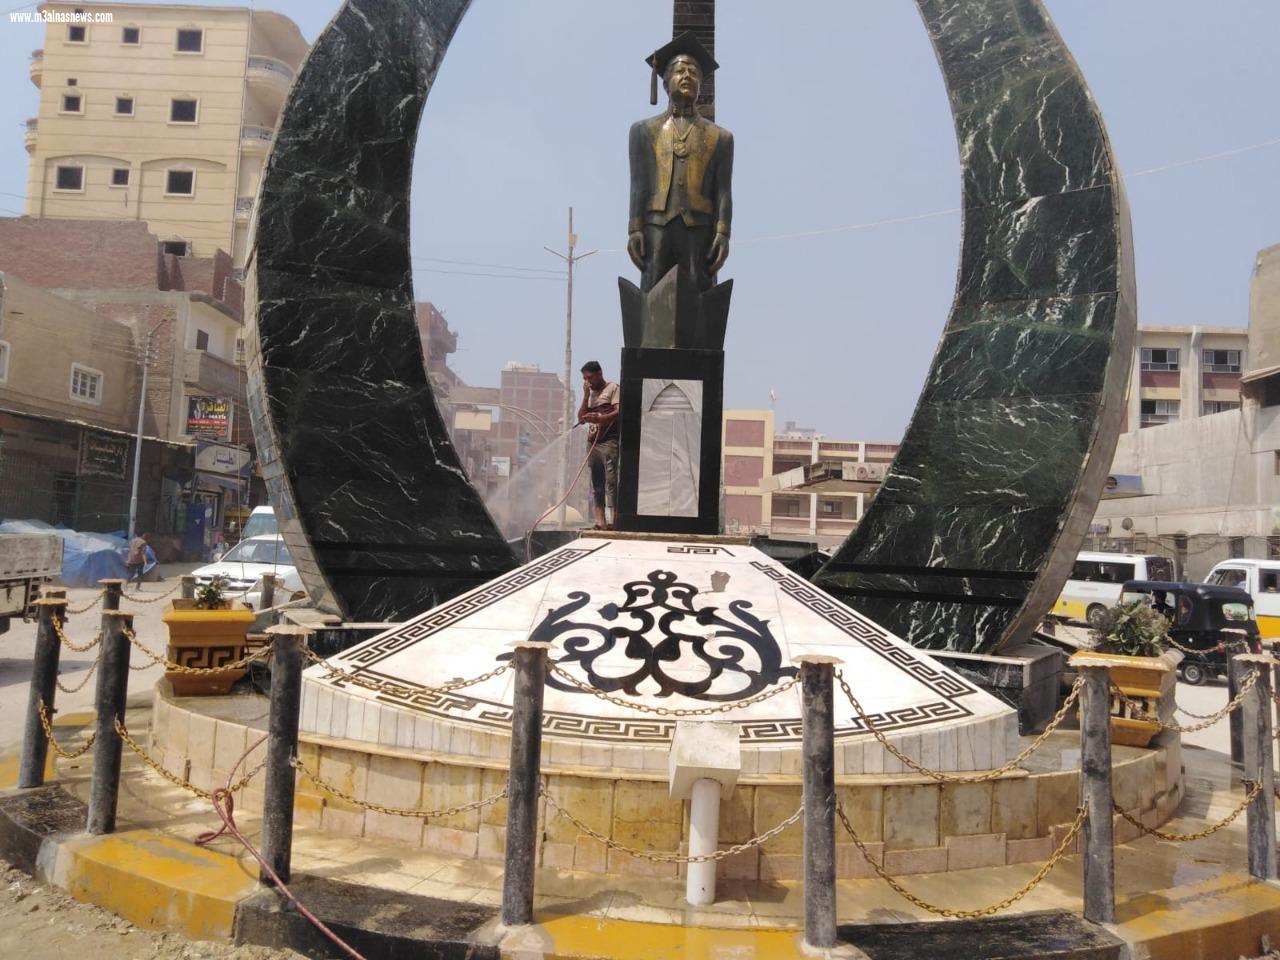 وضع الزهور والورود بجوار تمثال زويل بكفر الشيخ احتفالا بالذكرى الخامسة لرحيله